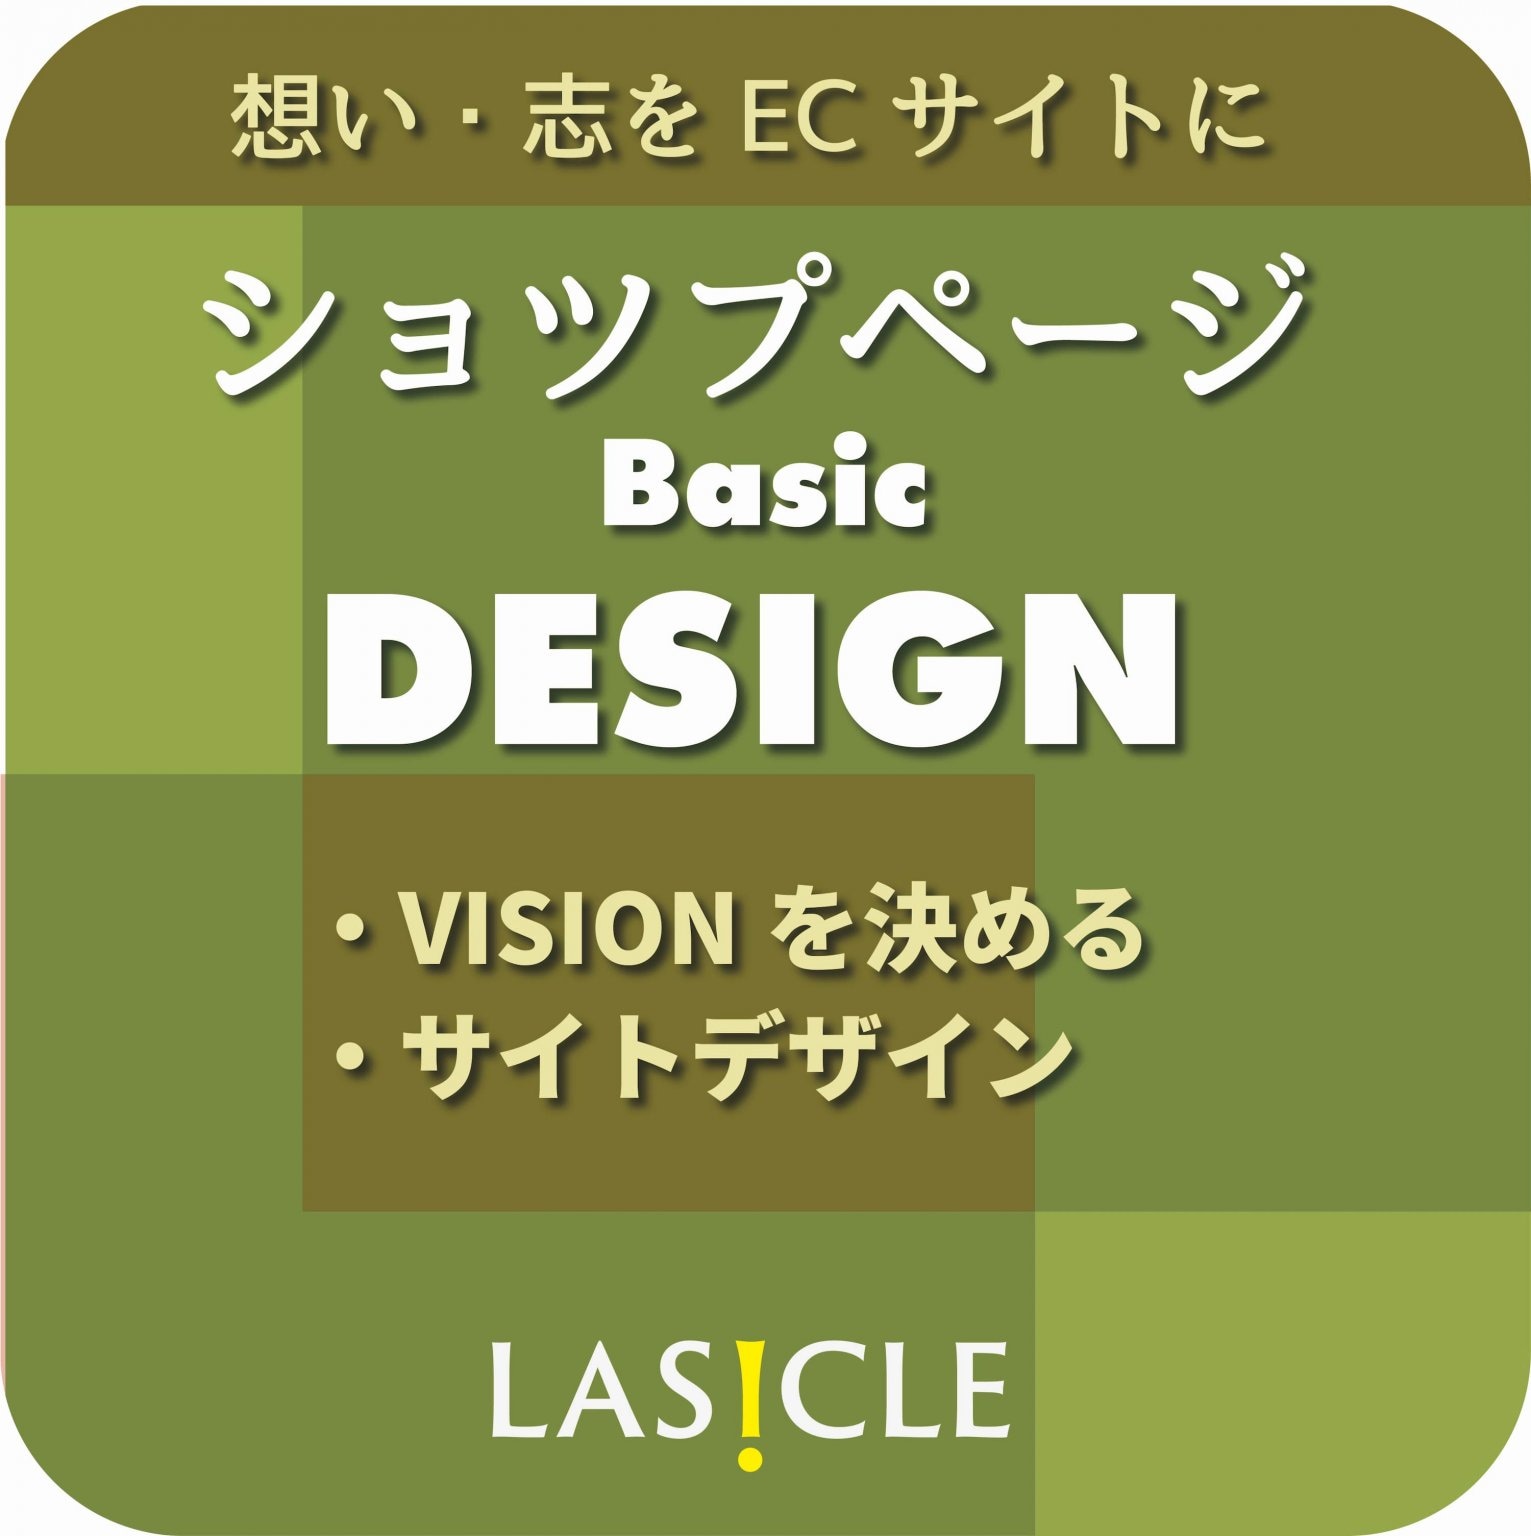 ショップページのBasic DESIGNサービス、アイキャッチ、PC,SPのスライダーをブランディングを意識したデザインサービスです。